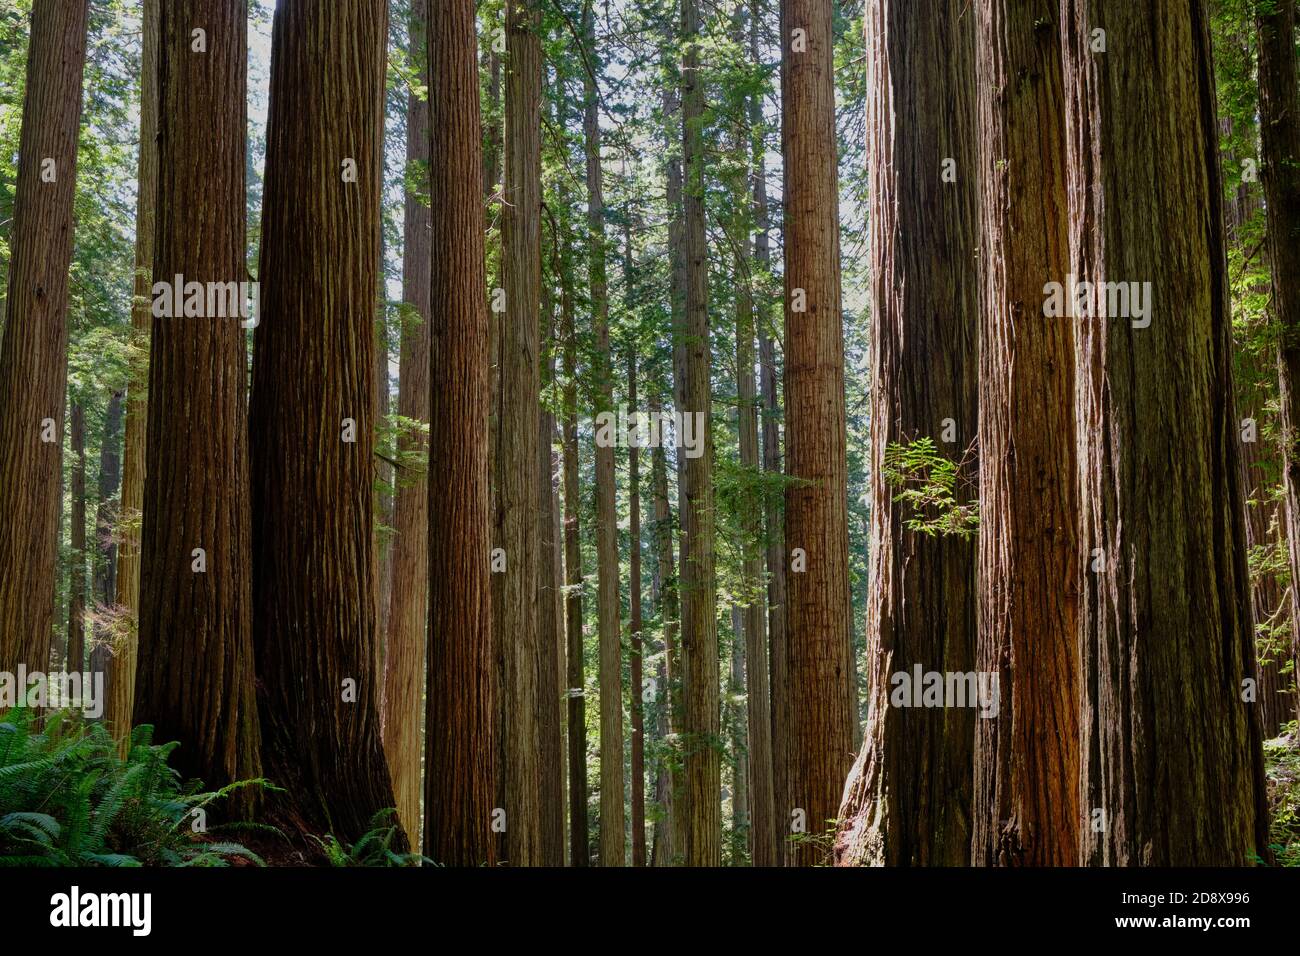 Grands séquoias dans Stout Grove, Jedediah Smith Redwoods State Park grandissent droit et haut et semblent presque parallèles. Banque D'Images